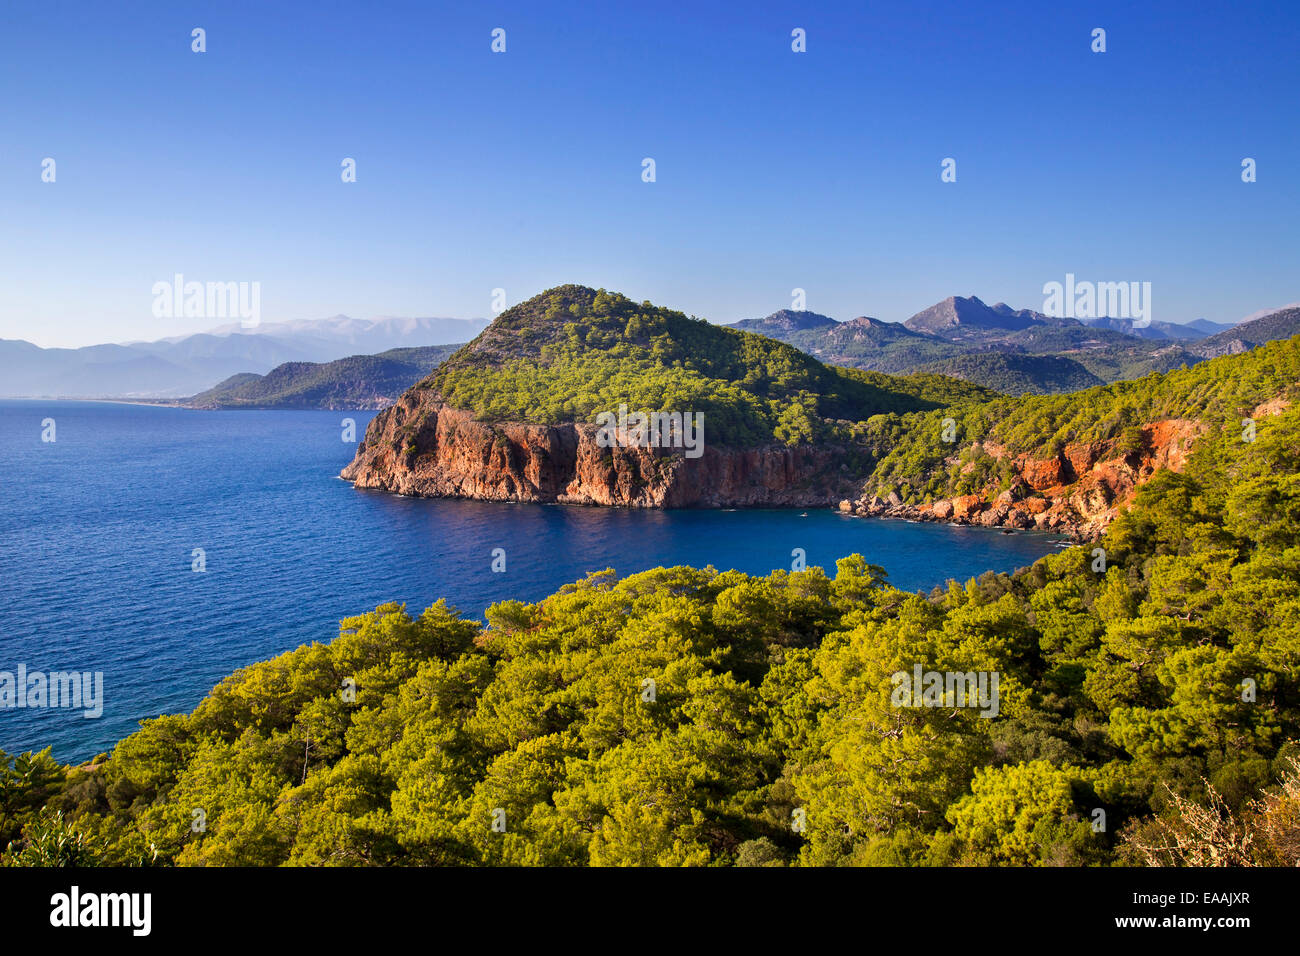 Blau und Grün am Meer Landschaft, Kumluca, Antalya, Türkei, 2014 Stockfoto